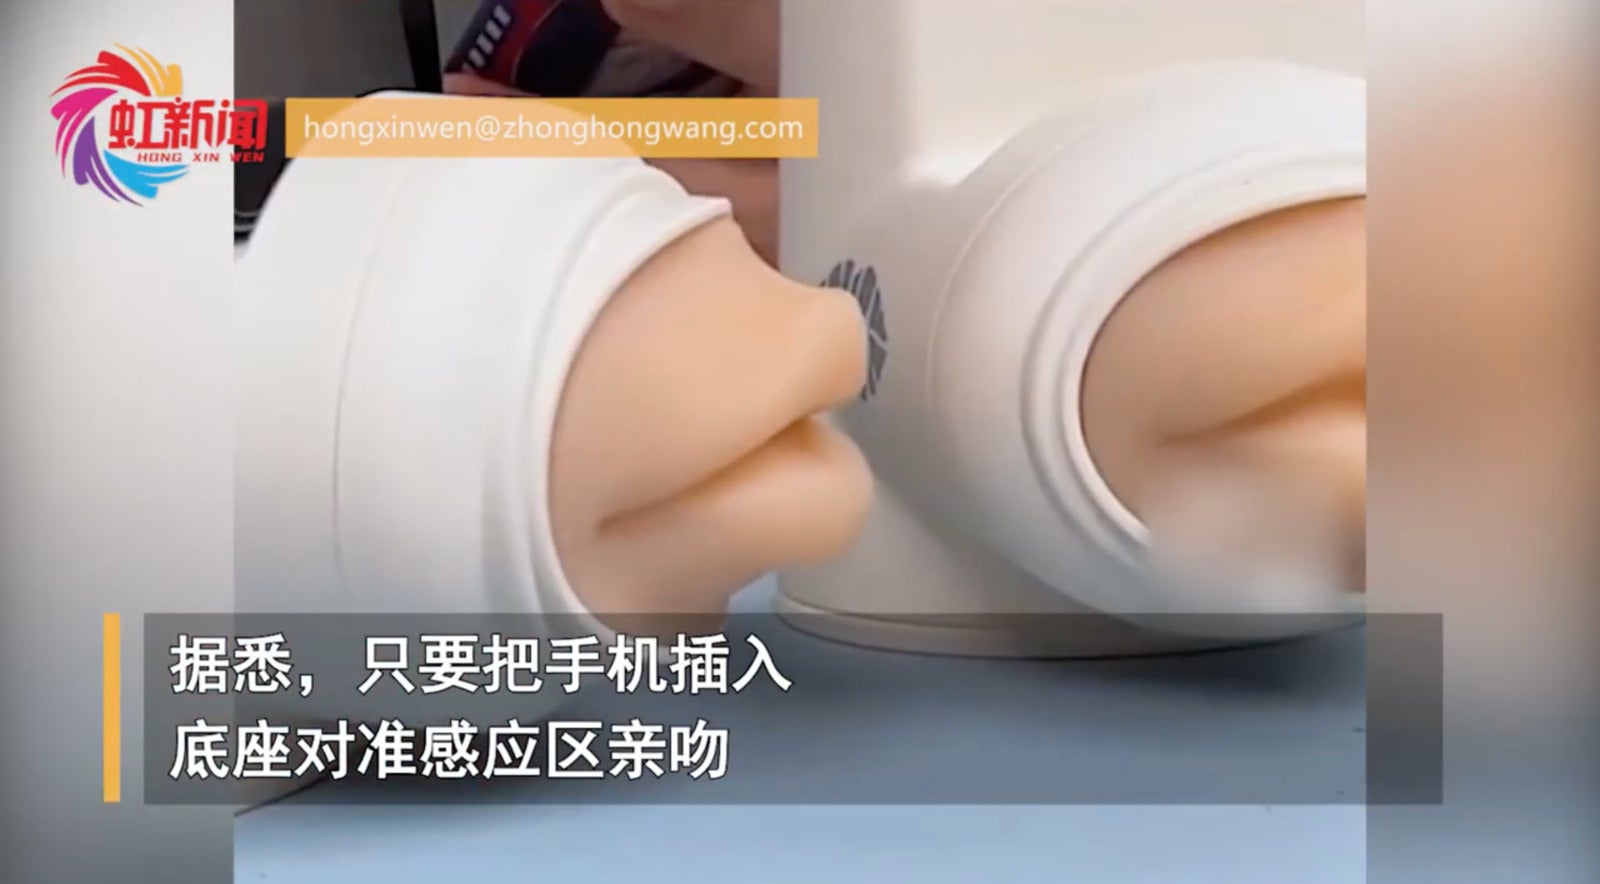 อุปกรณ์จูบเสมือนจริง สินค้าจีน แปลก Taobao